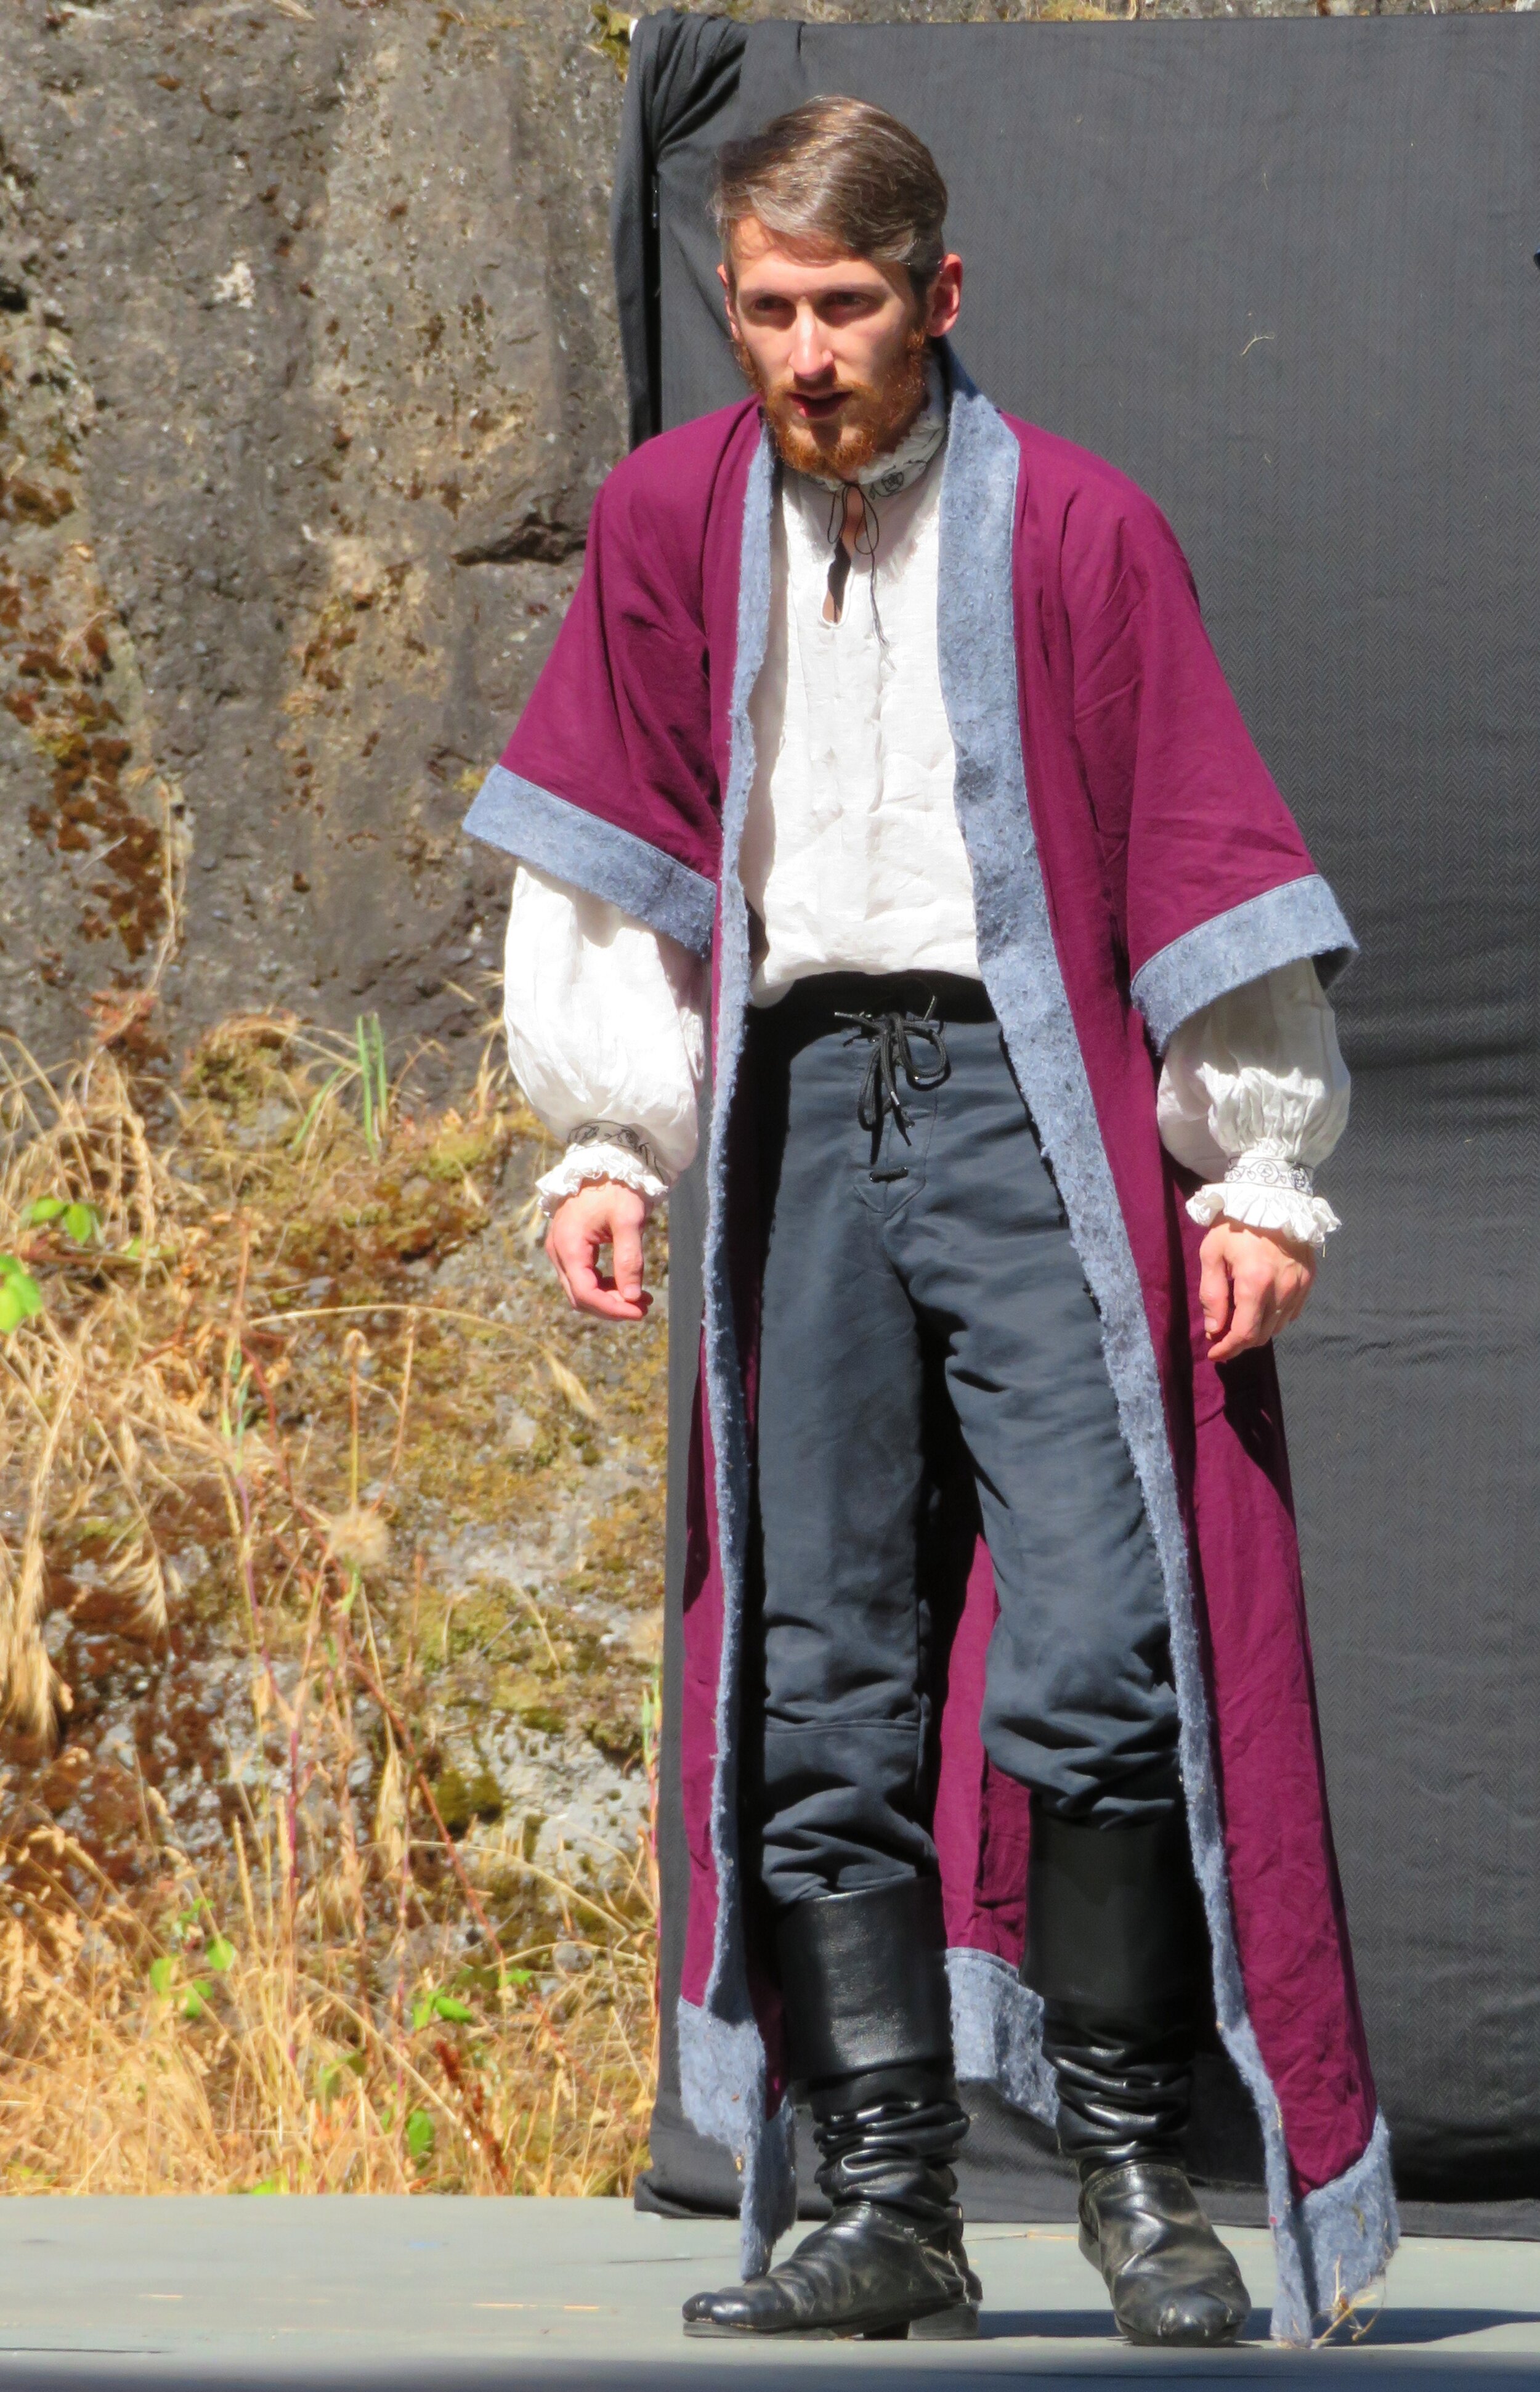 James Brown as King Richard III